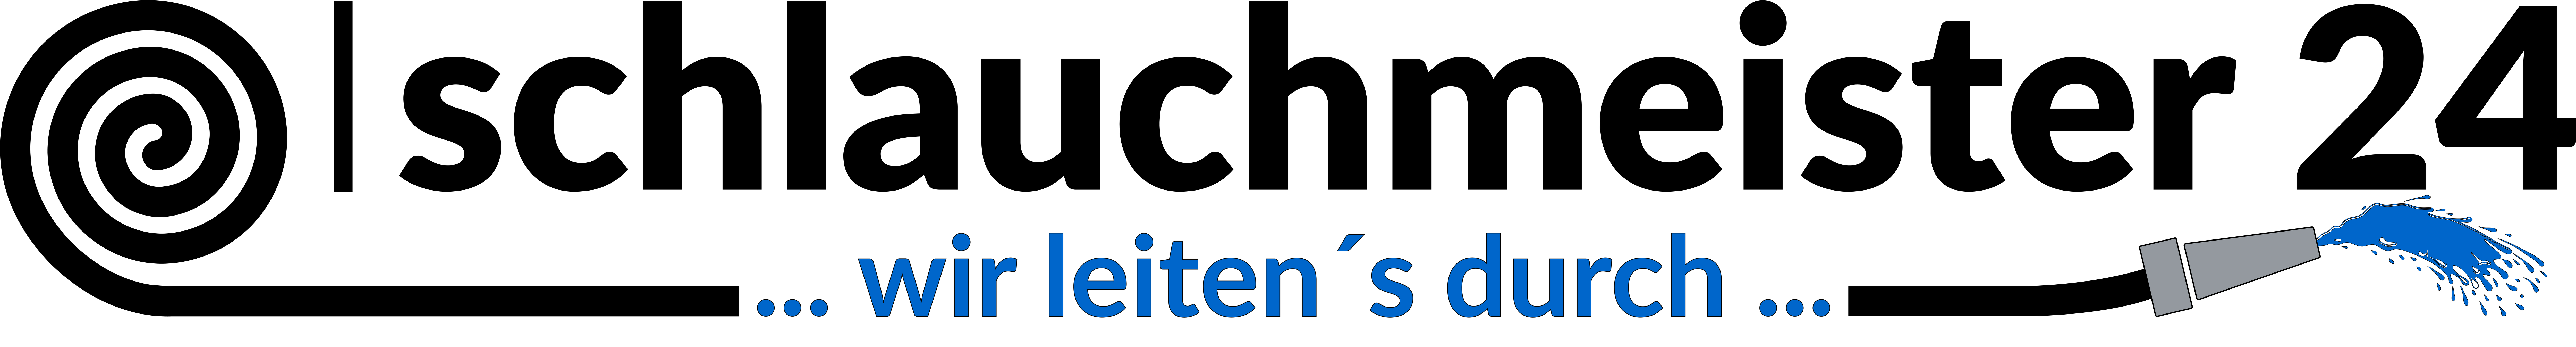 schlauchmeister24